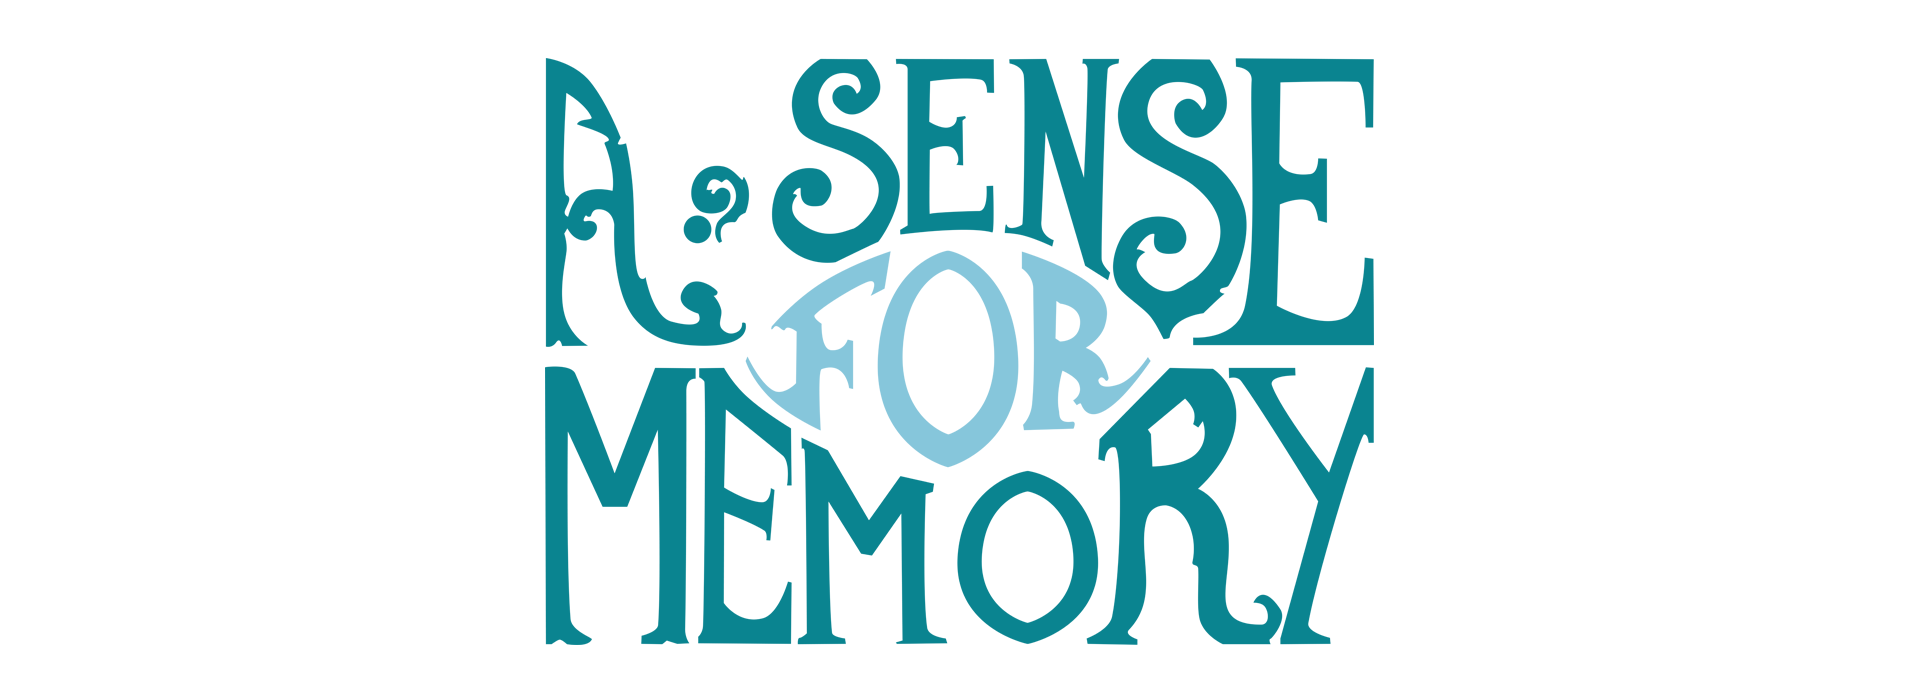 A Sense For Memory